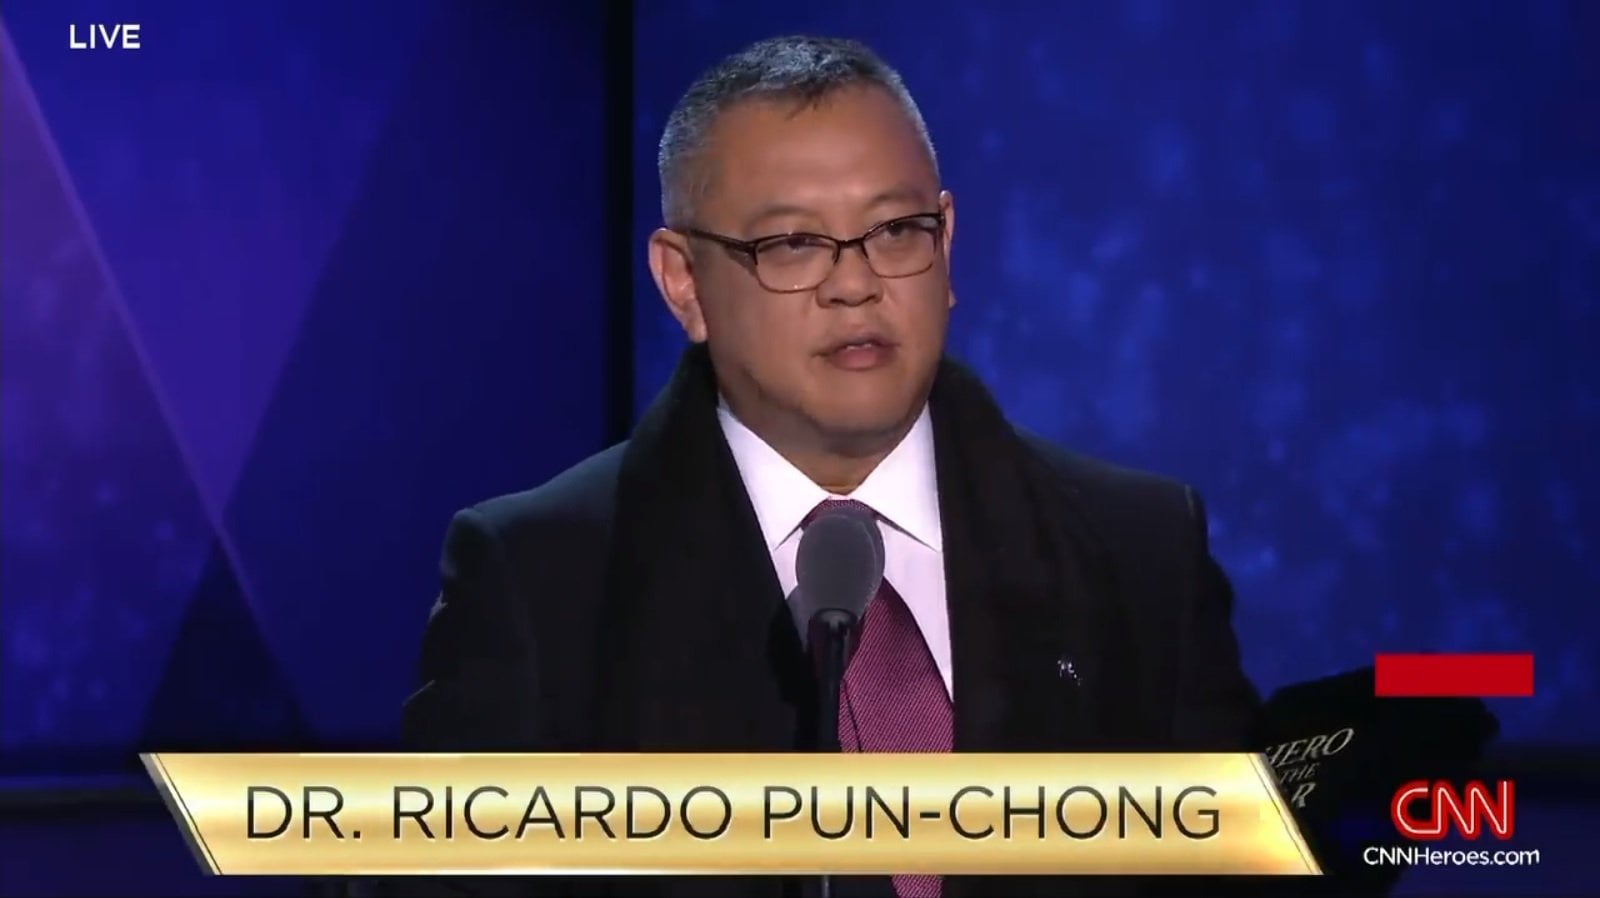 Médico peruano Ricardo Pun Chong ganó concurso 'Héroes' de CNN